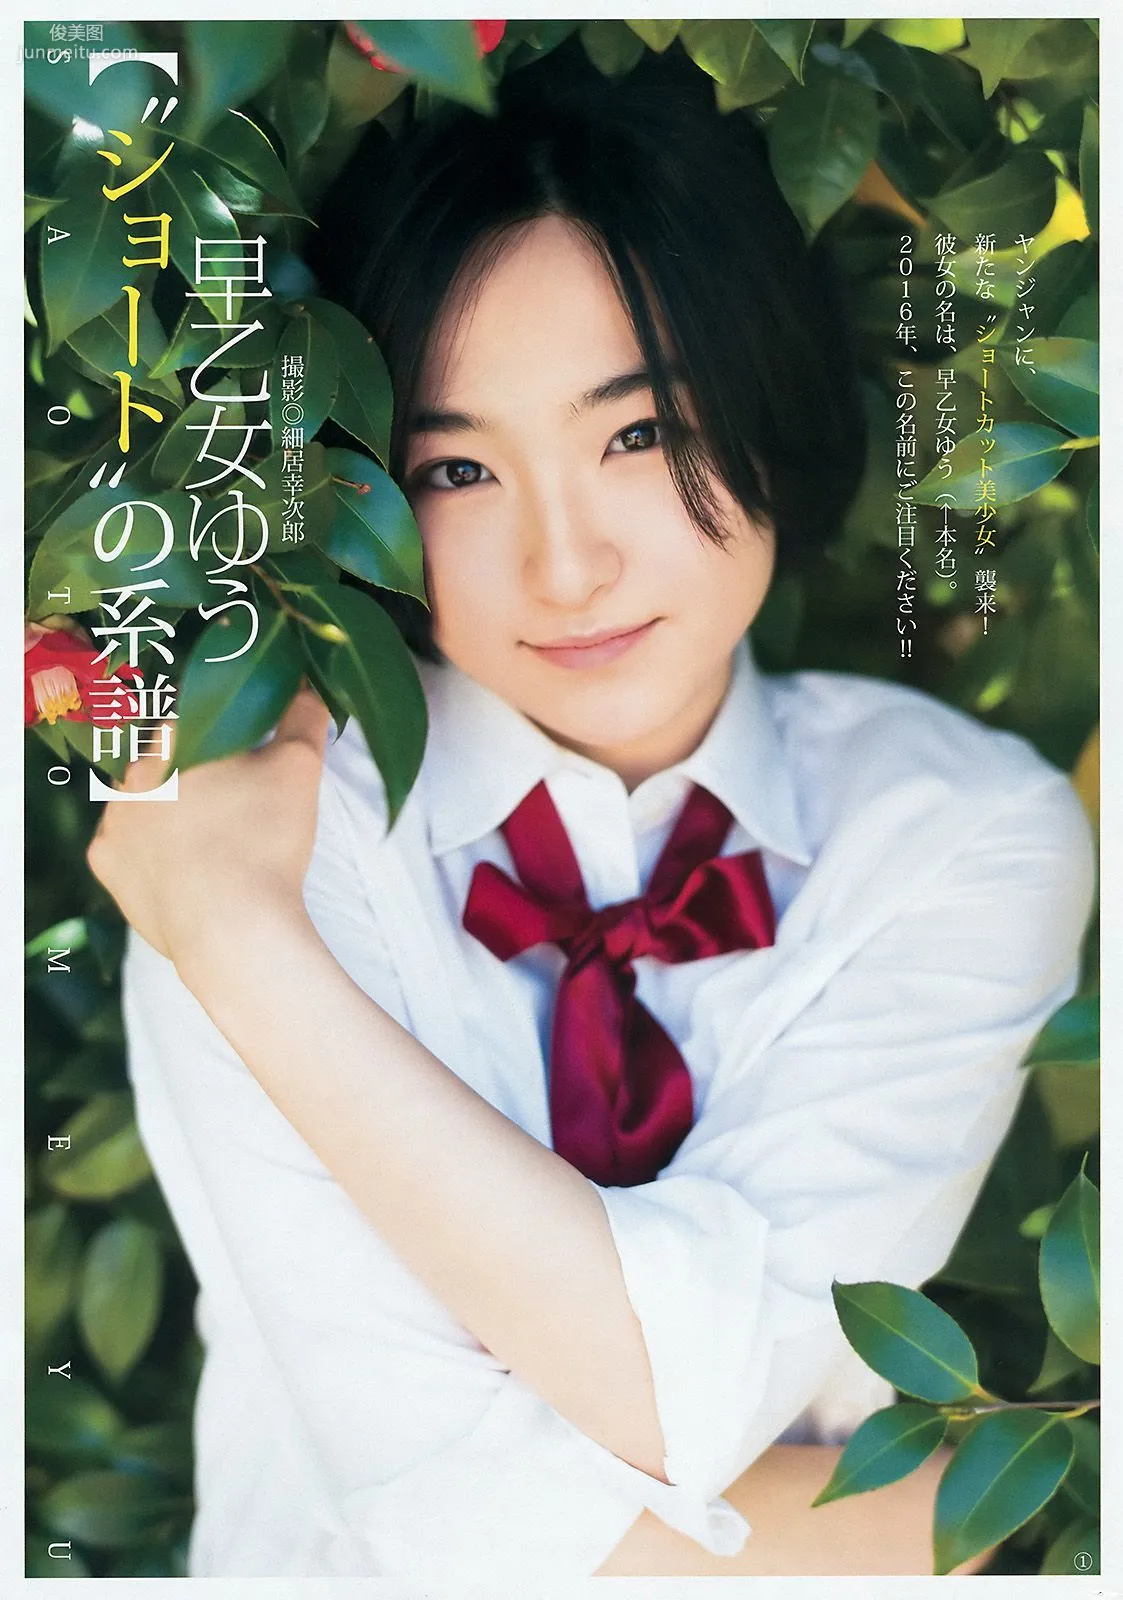 最上もが 早乙女ゆう [Weekly Young Jump] 2016年No.22-23写真杂志8